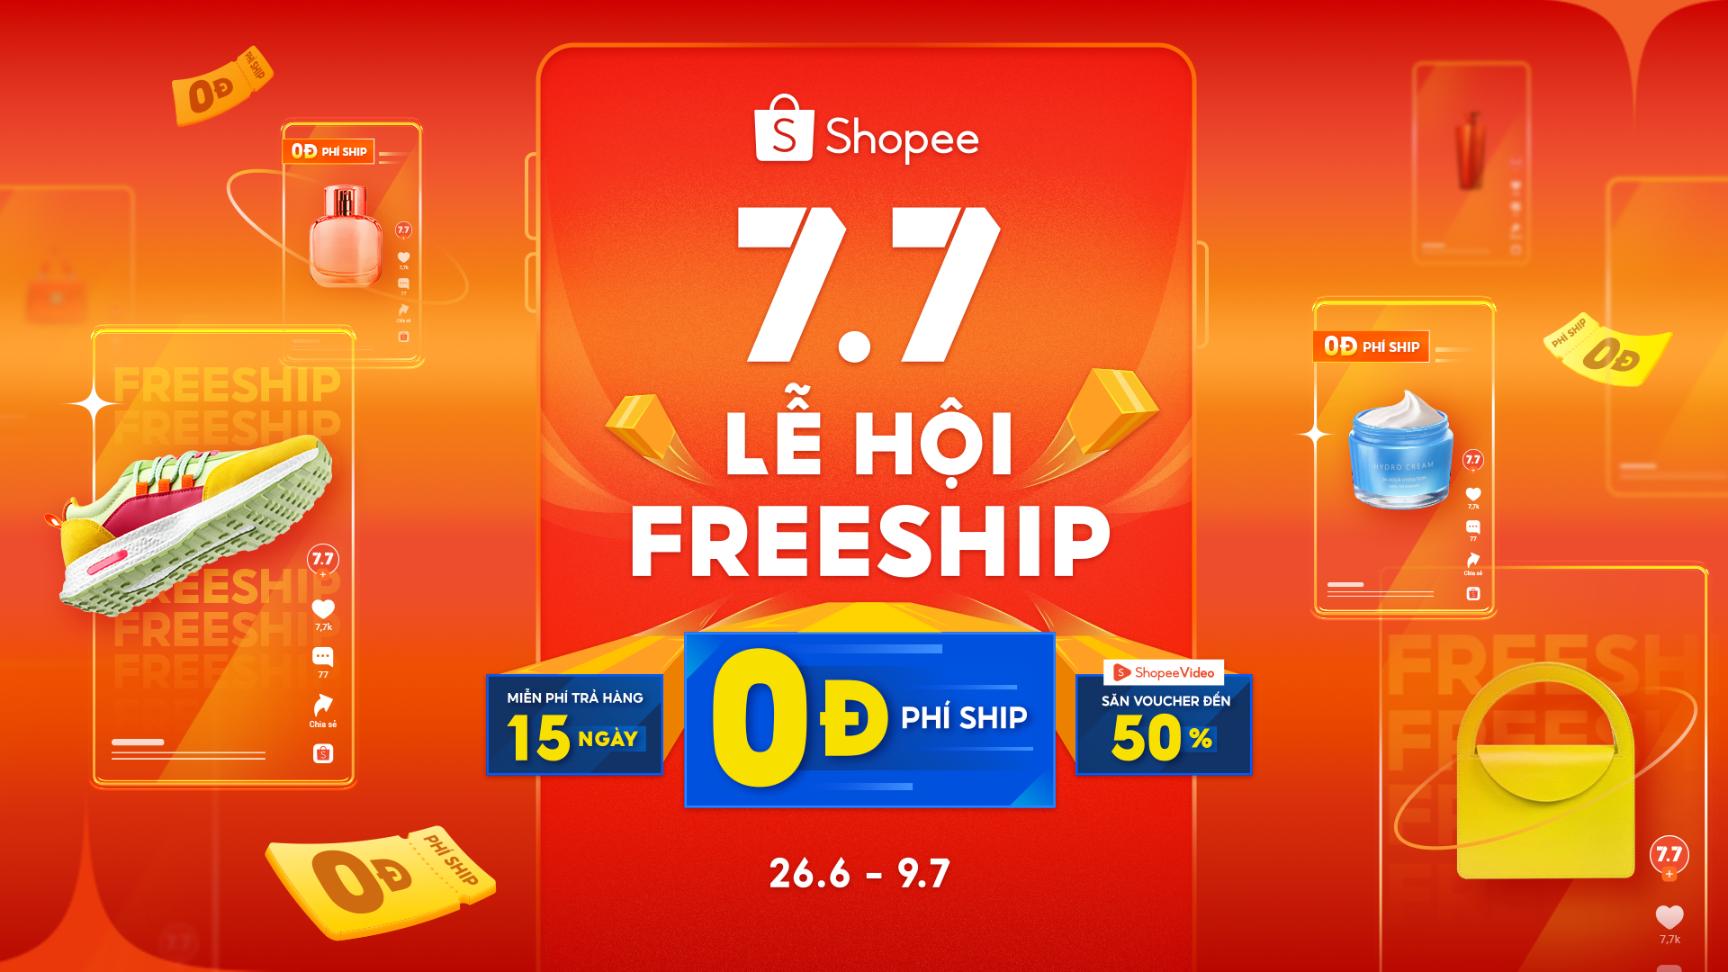 shopee 5 Nội thất bỗng bớt cồng kềnh nhờ deal xịn với phí ship 0 đồng từ siêu sale Shopee 7.7